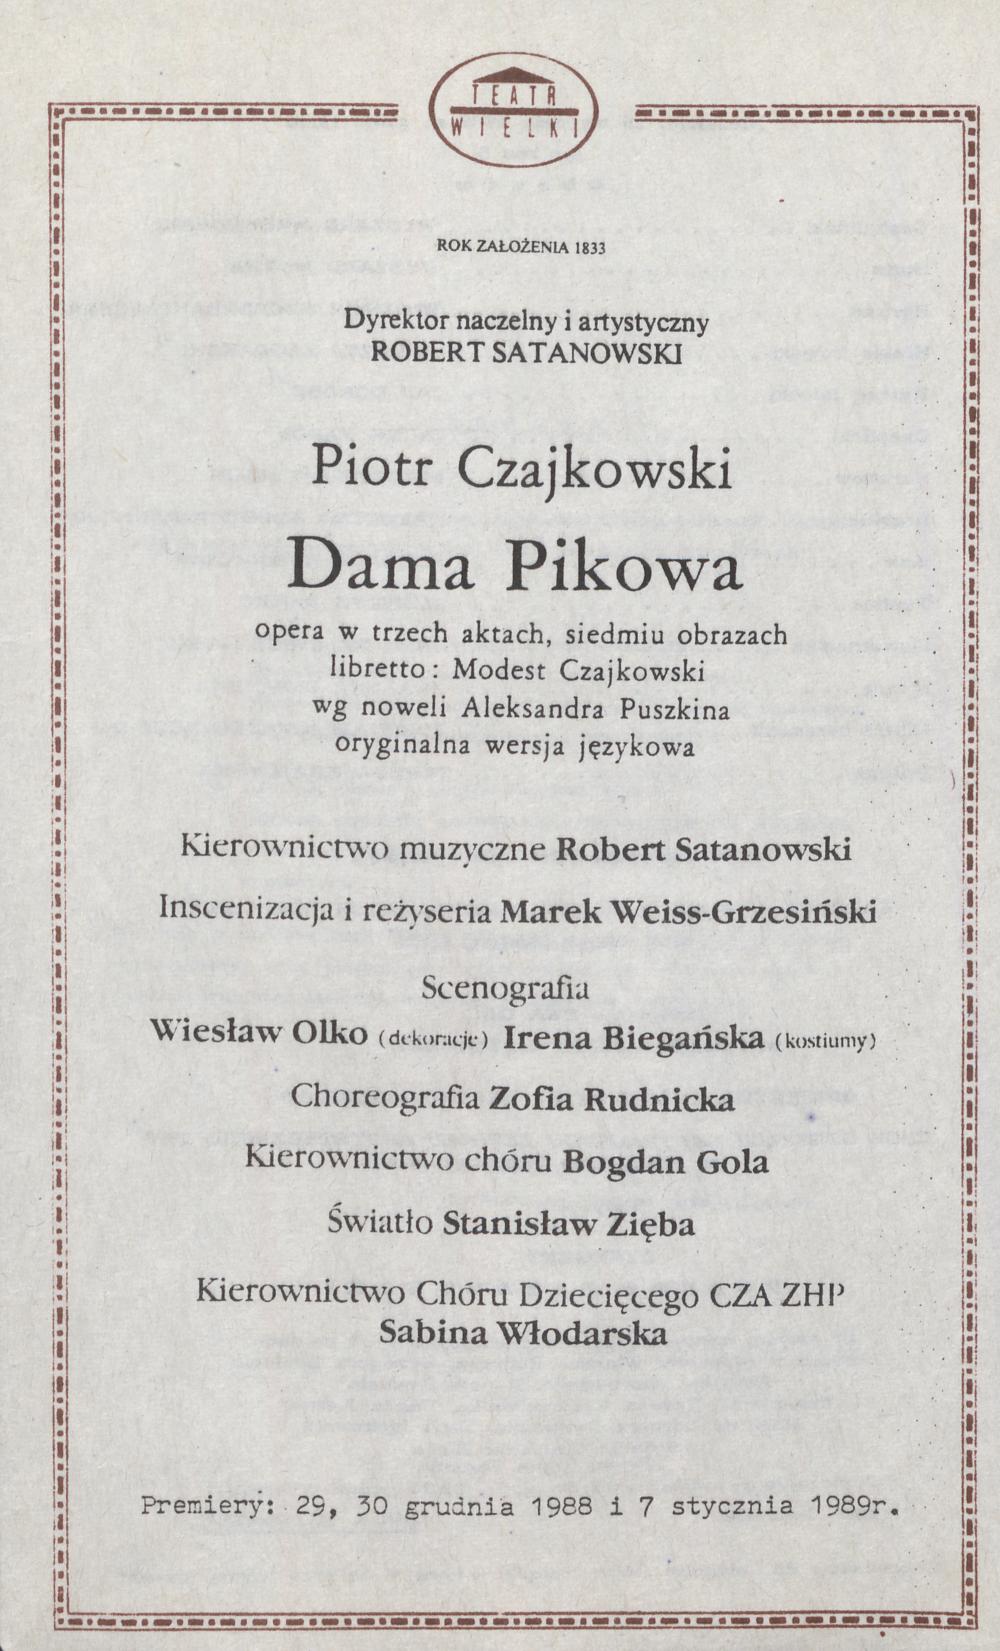 Wkładka obsadowa „Dama pikowa” Piotr Czajkowski 15-01-1989